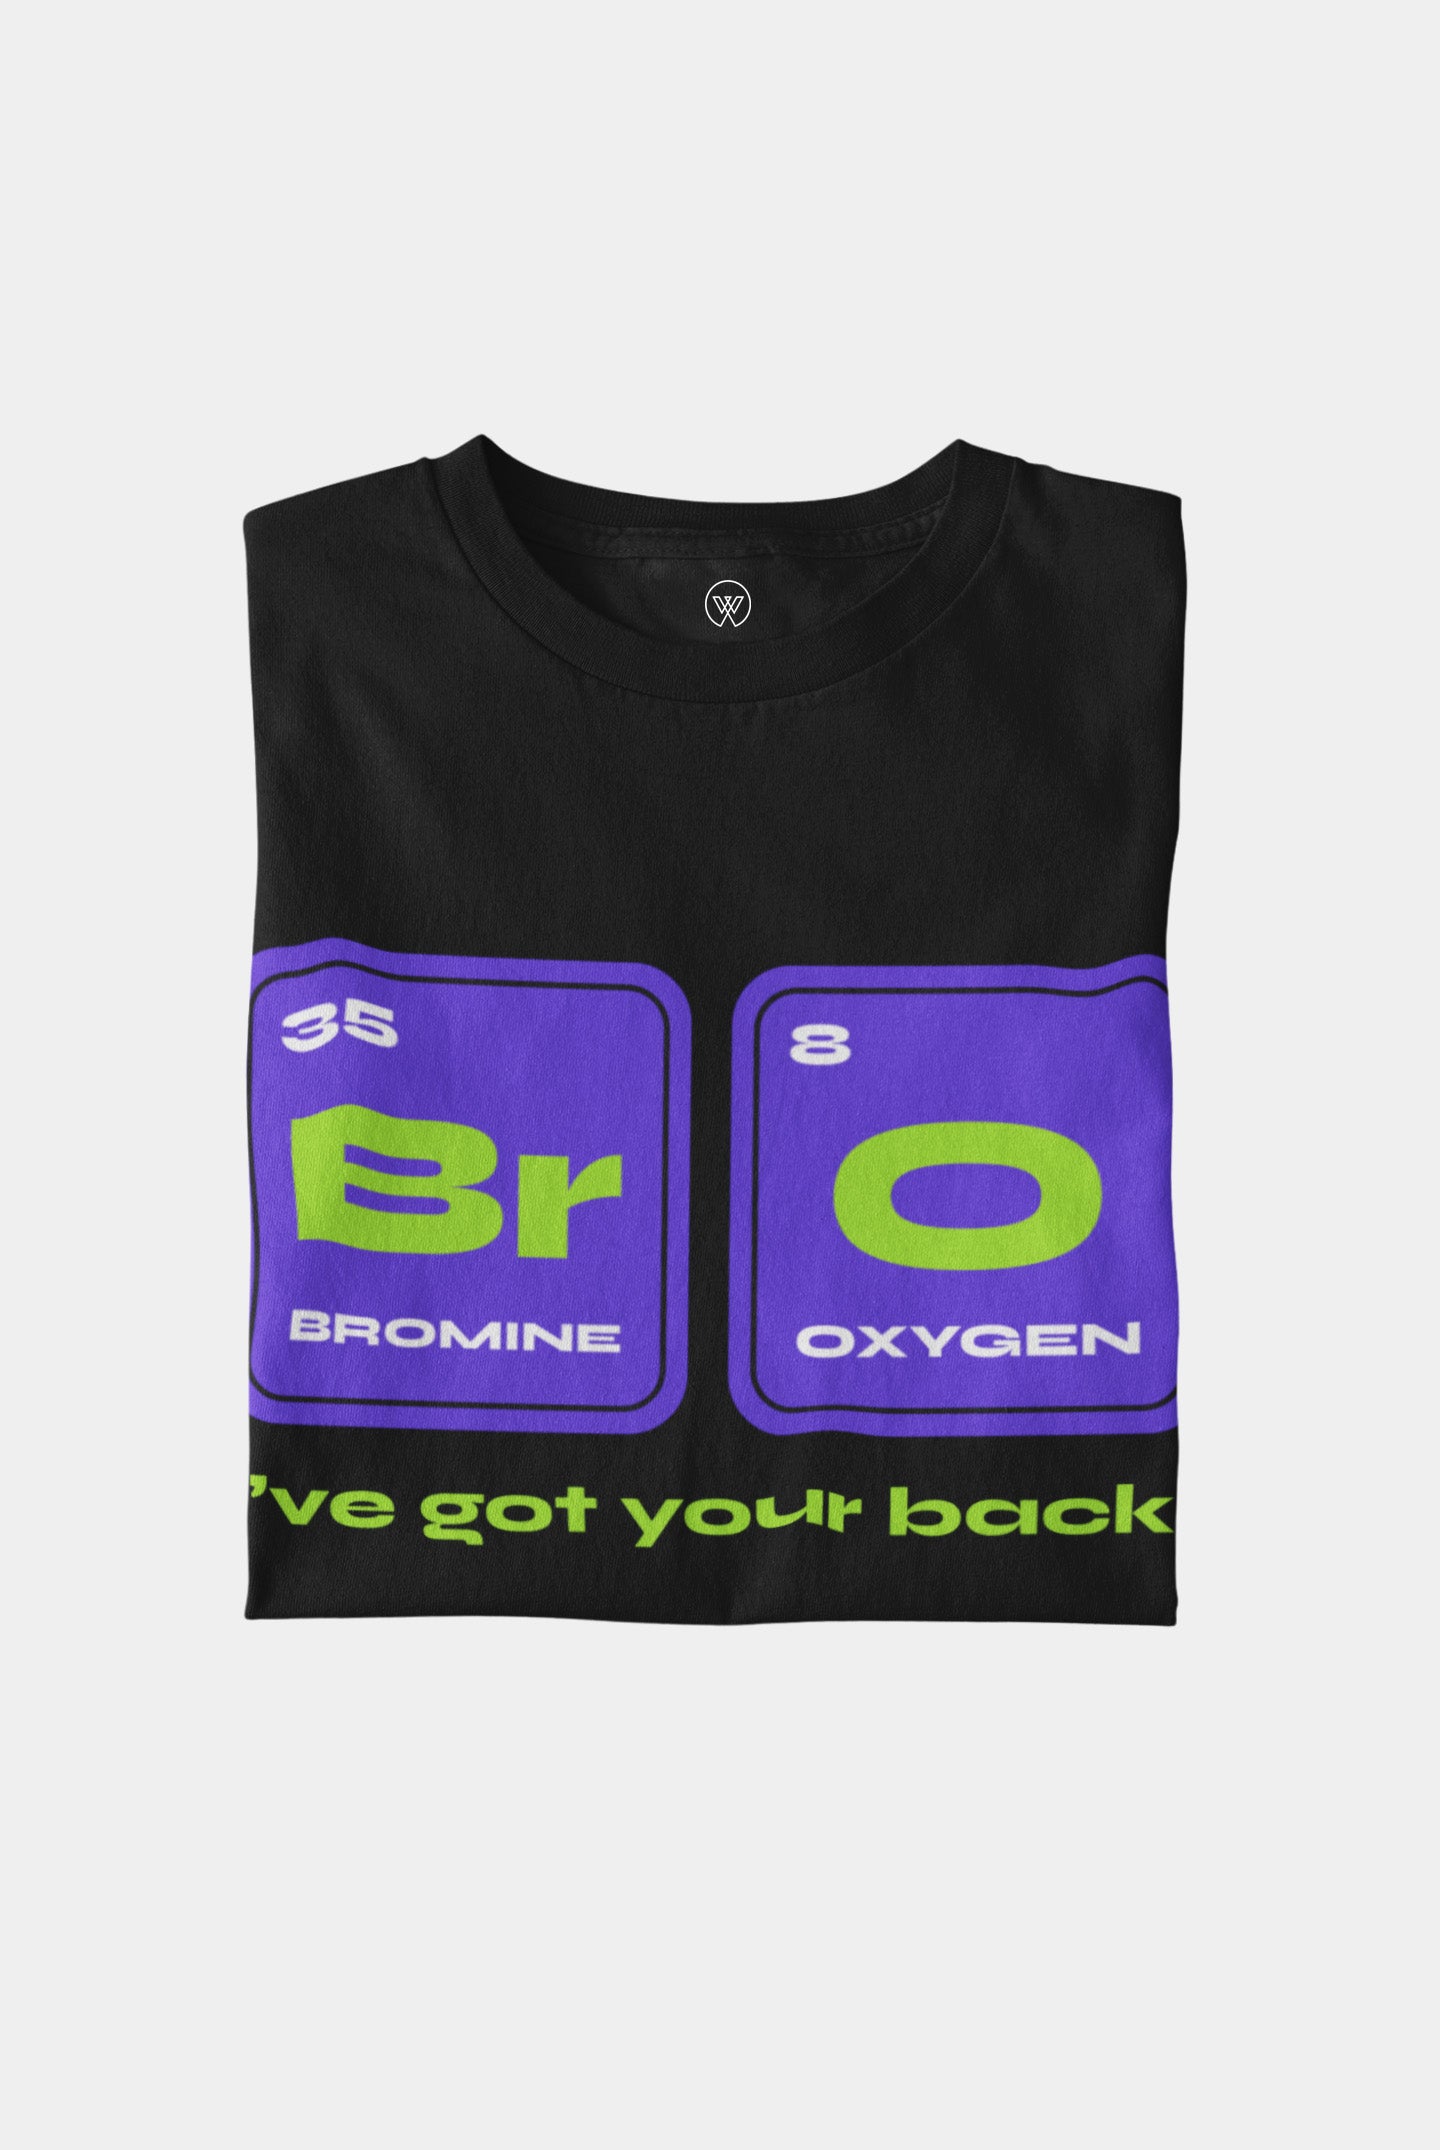 BrO I've got your back! T-Shirt